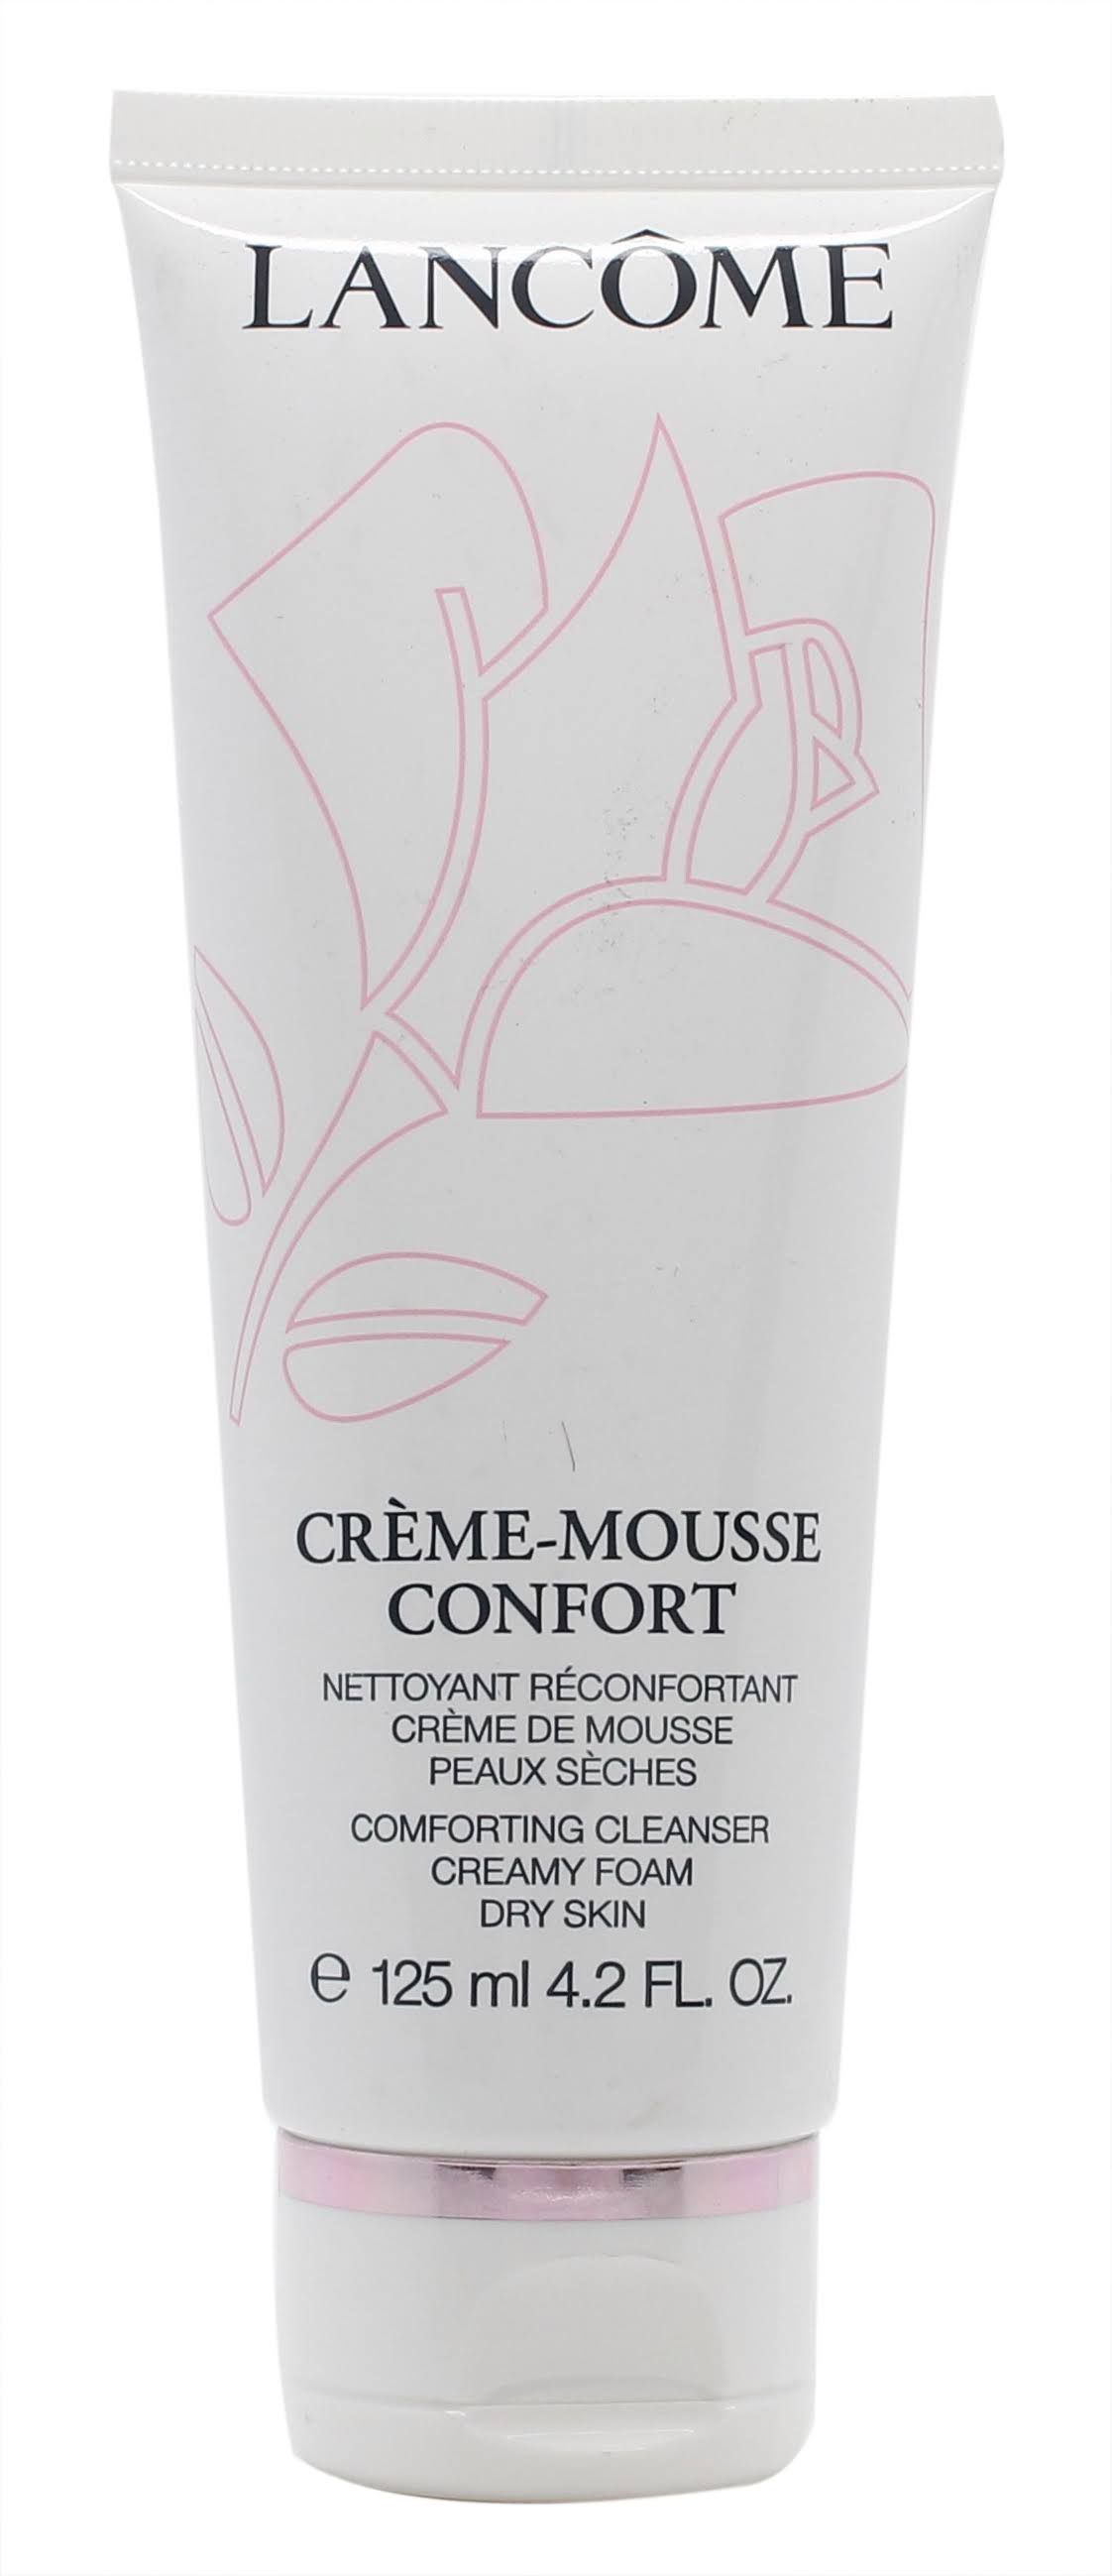 Lancome Creme Mousse Confort - 125ml